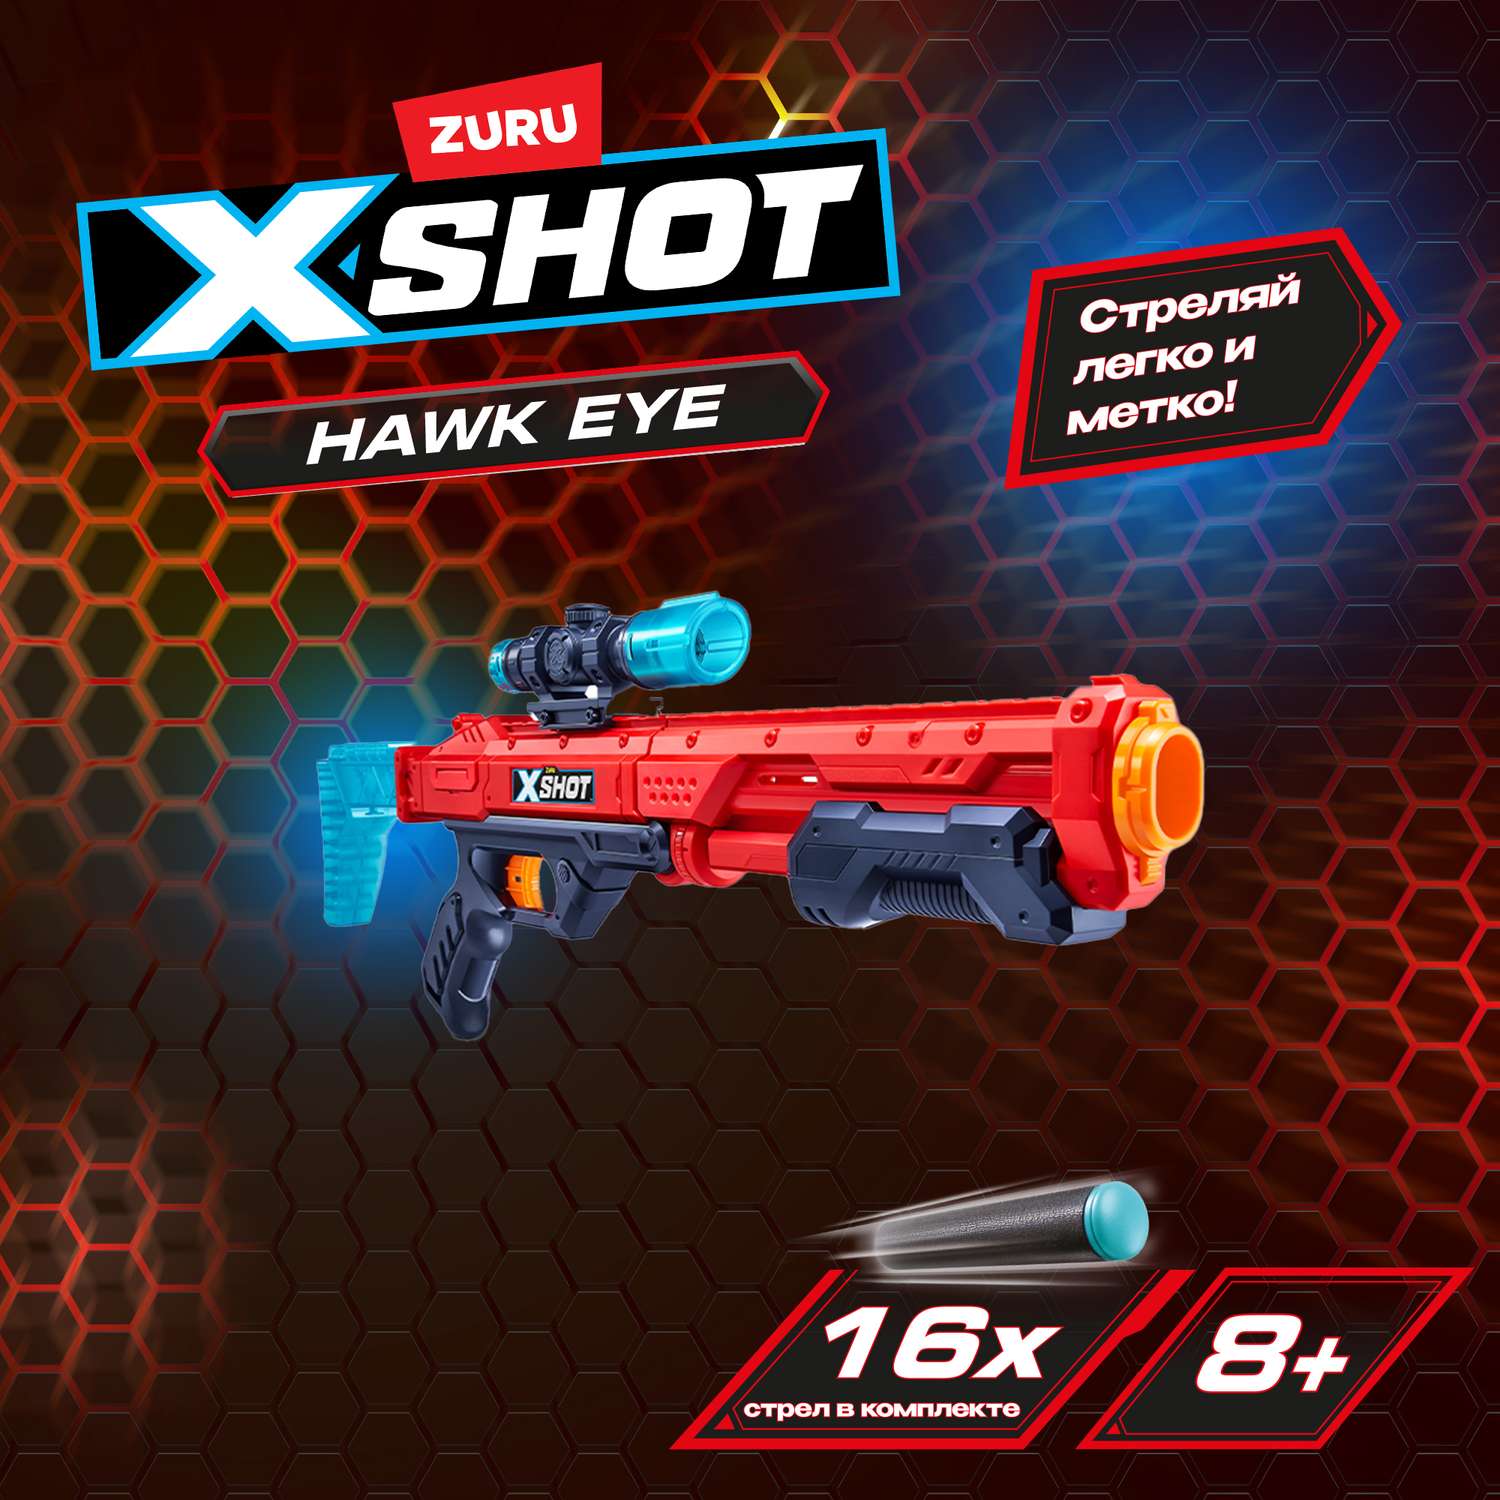 Набор X-SHOT  Глаз Ястреба 36435 - фото 1